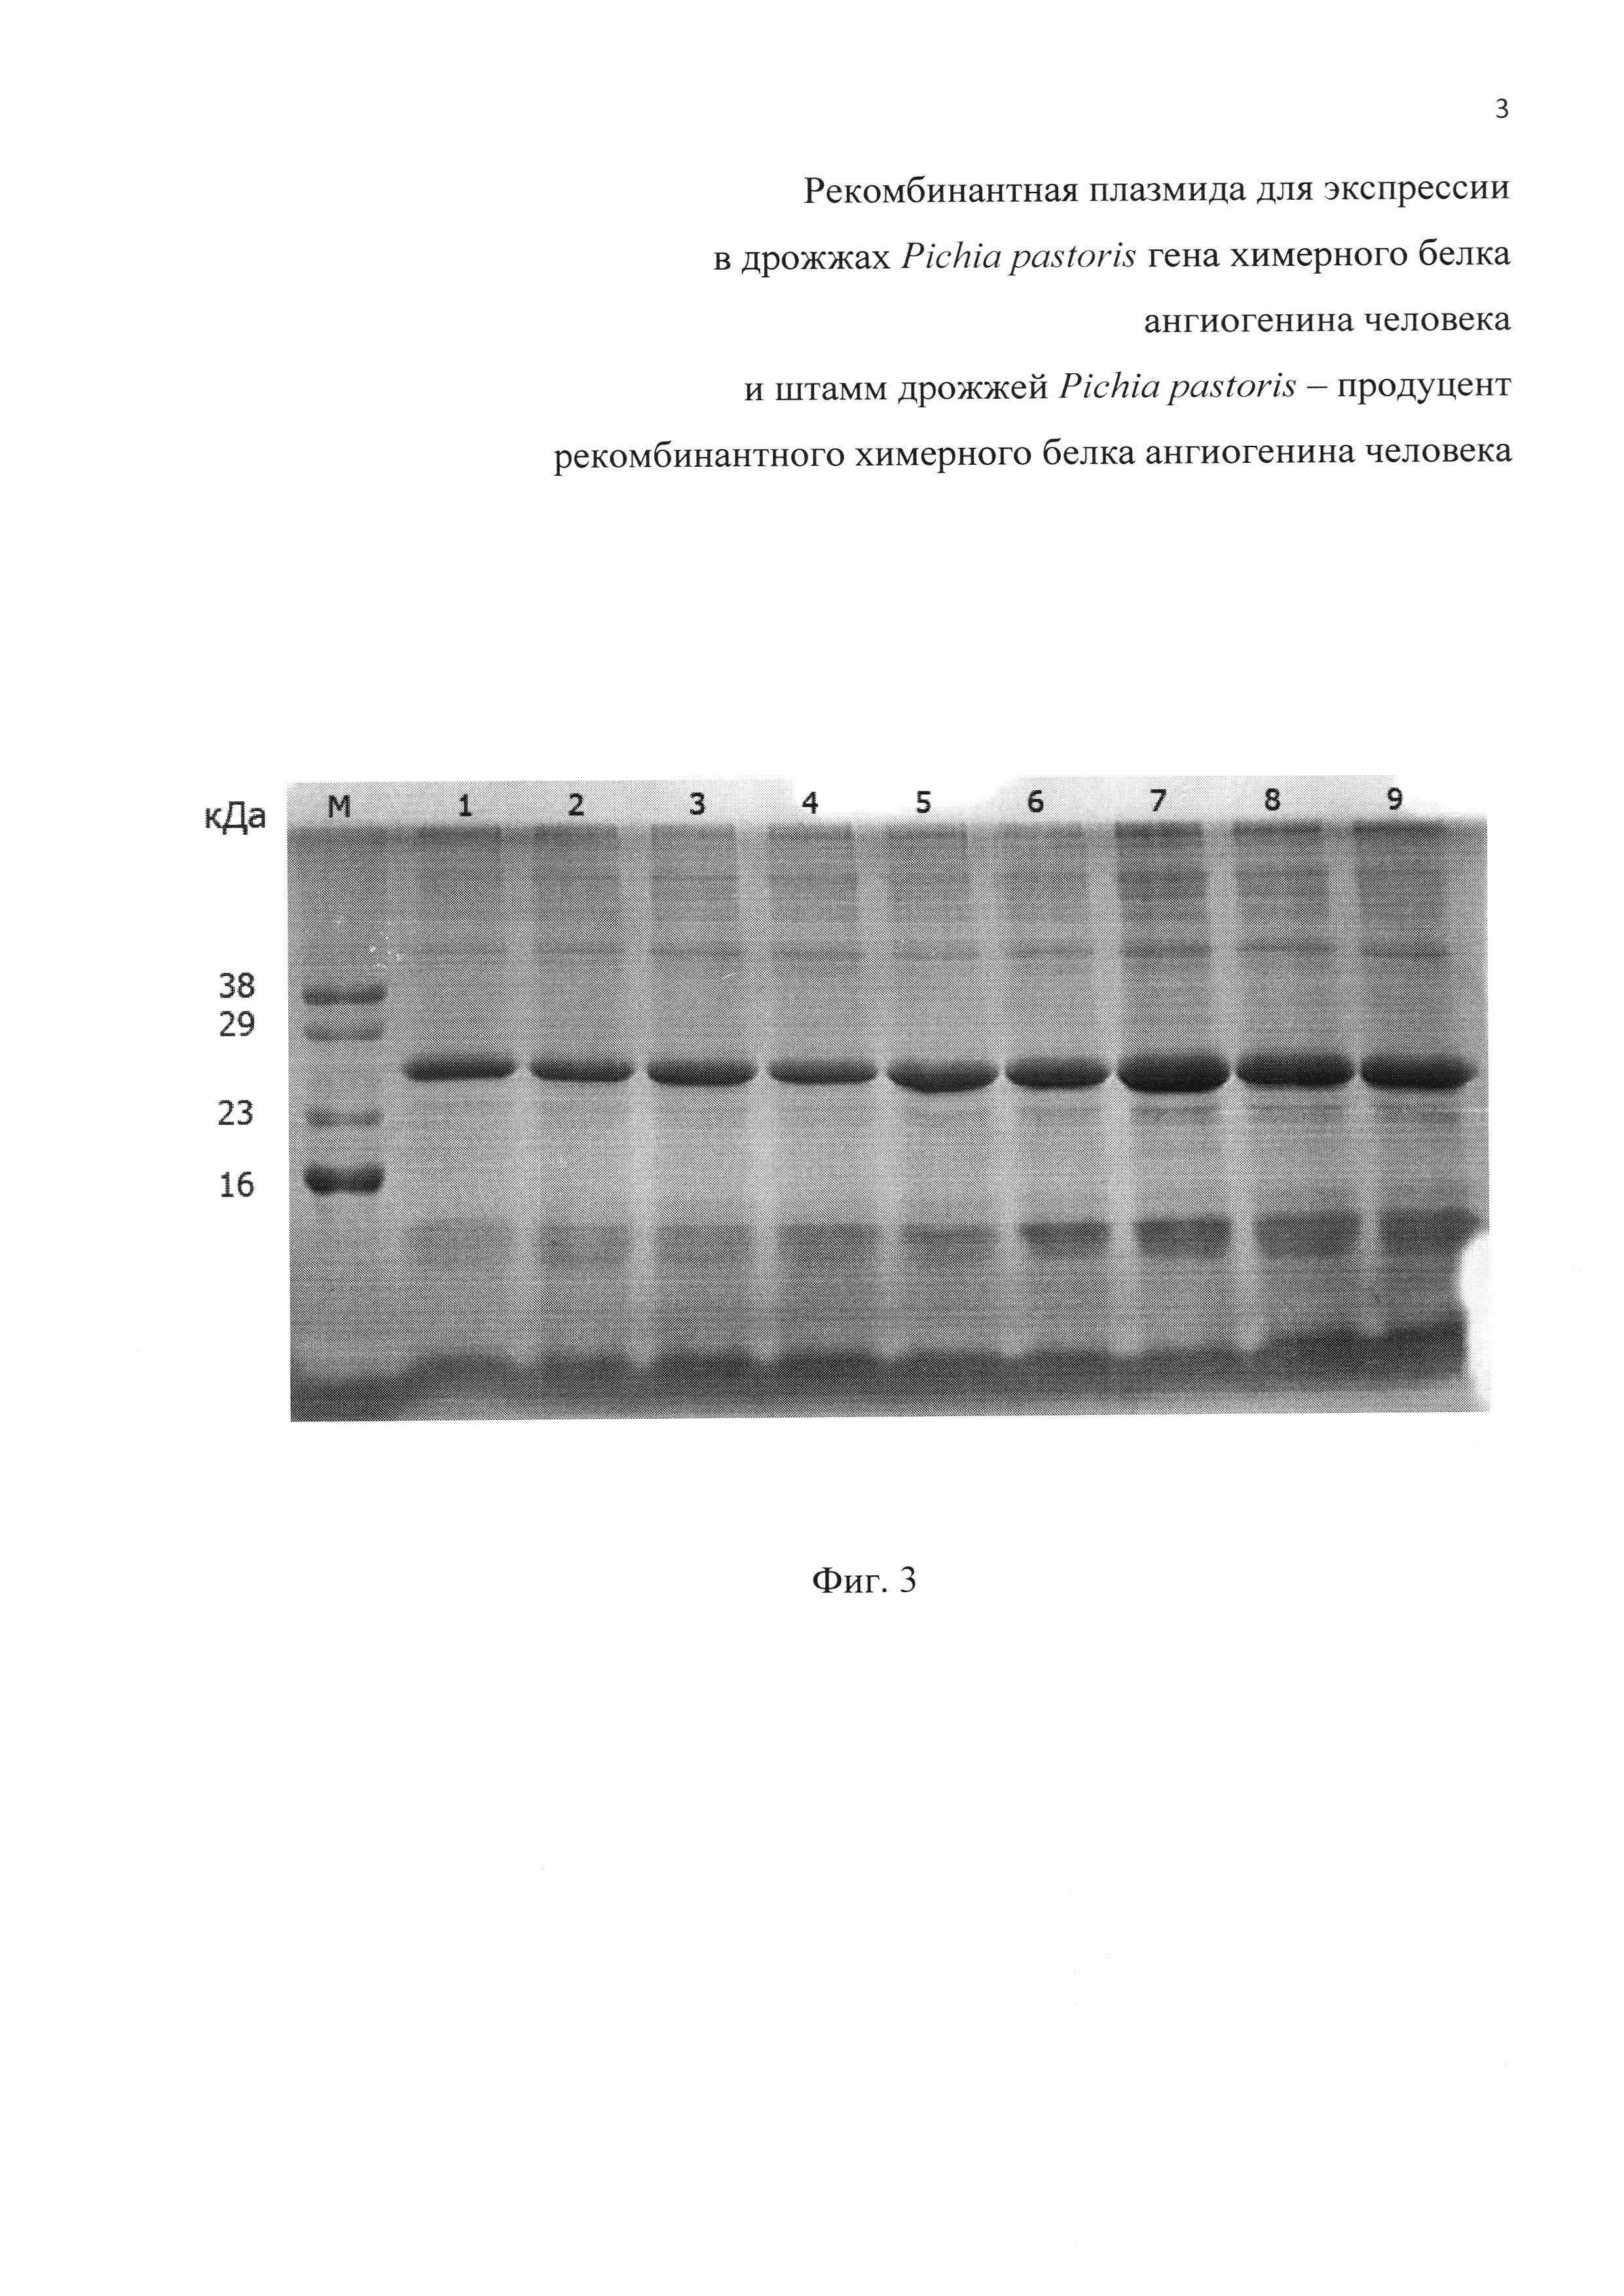 Рекомбинантная плазмида для экспрессии в дрожжах Pichia pastoris гена химерного белка ангиогенина человека и штамм дрожжей Pichia pastoris - продуцент рекомбинантного химерного белка ангиогенина человека